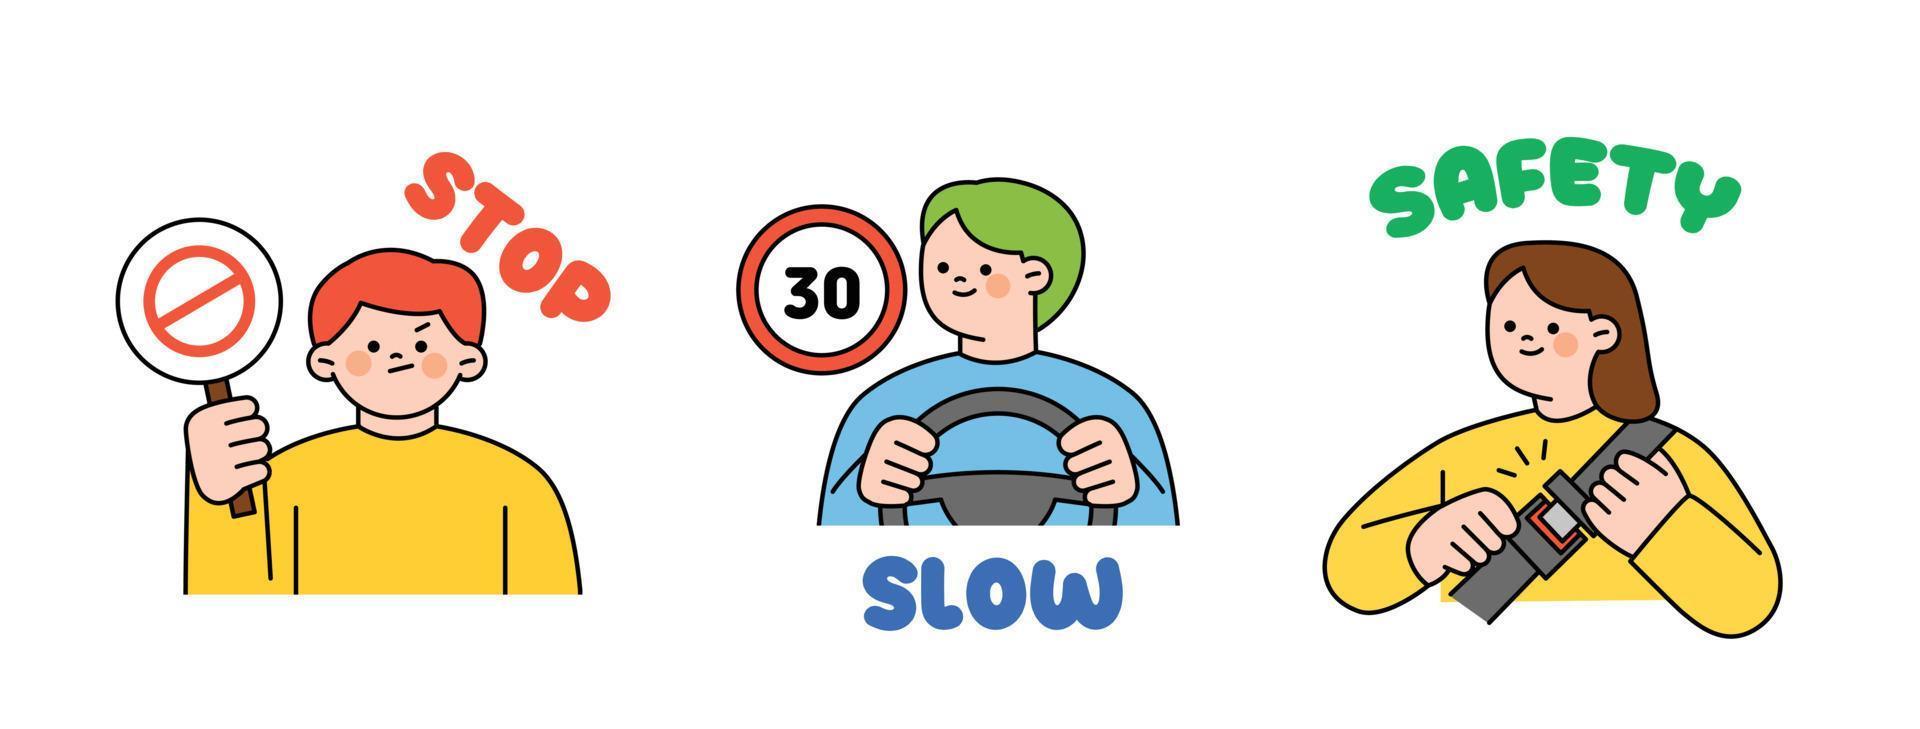 tráfico la seguridad manual para conductores persona participación un detener signo. hombre conducción y velocidad signo. un persona vistiendo un asiento cinturón. vector